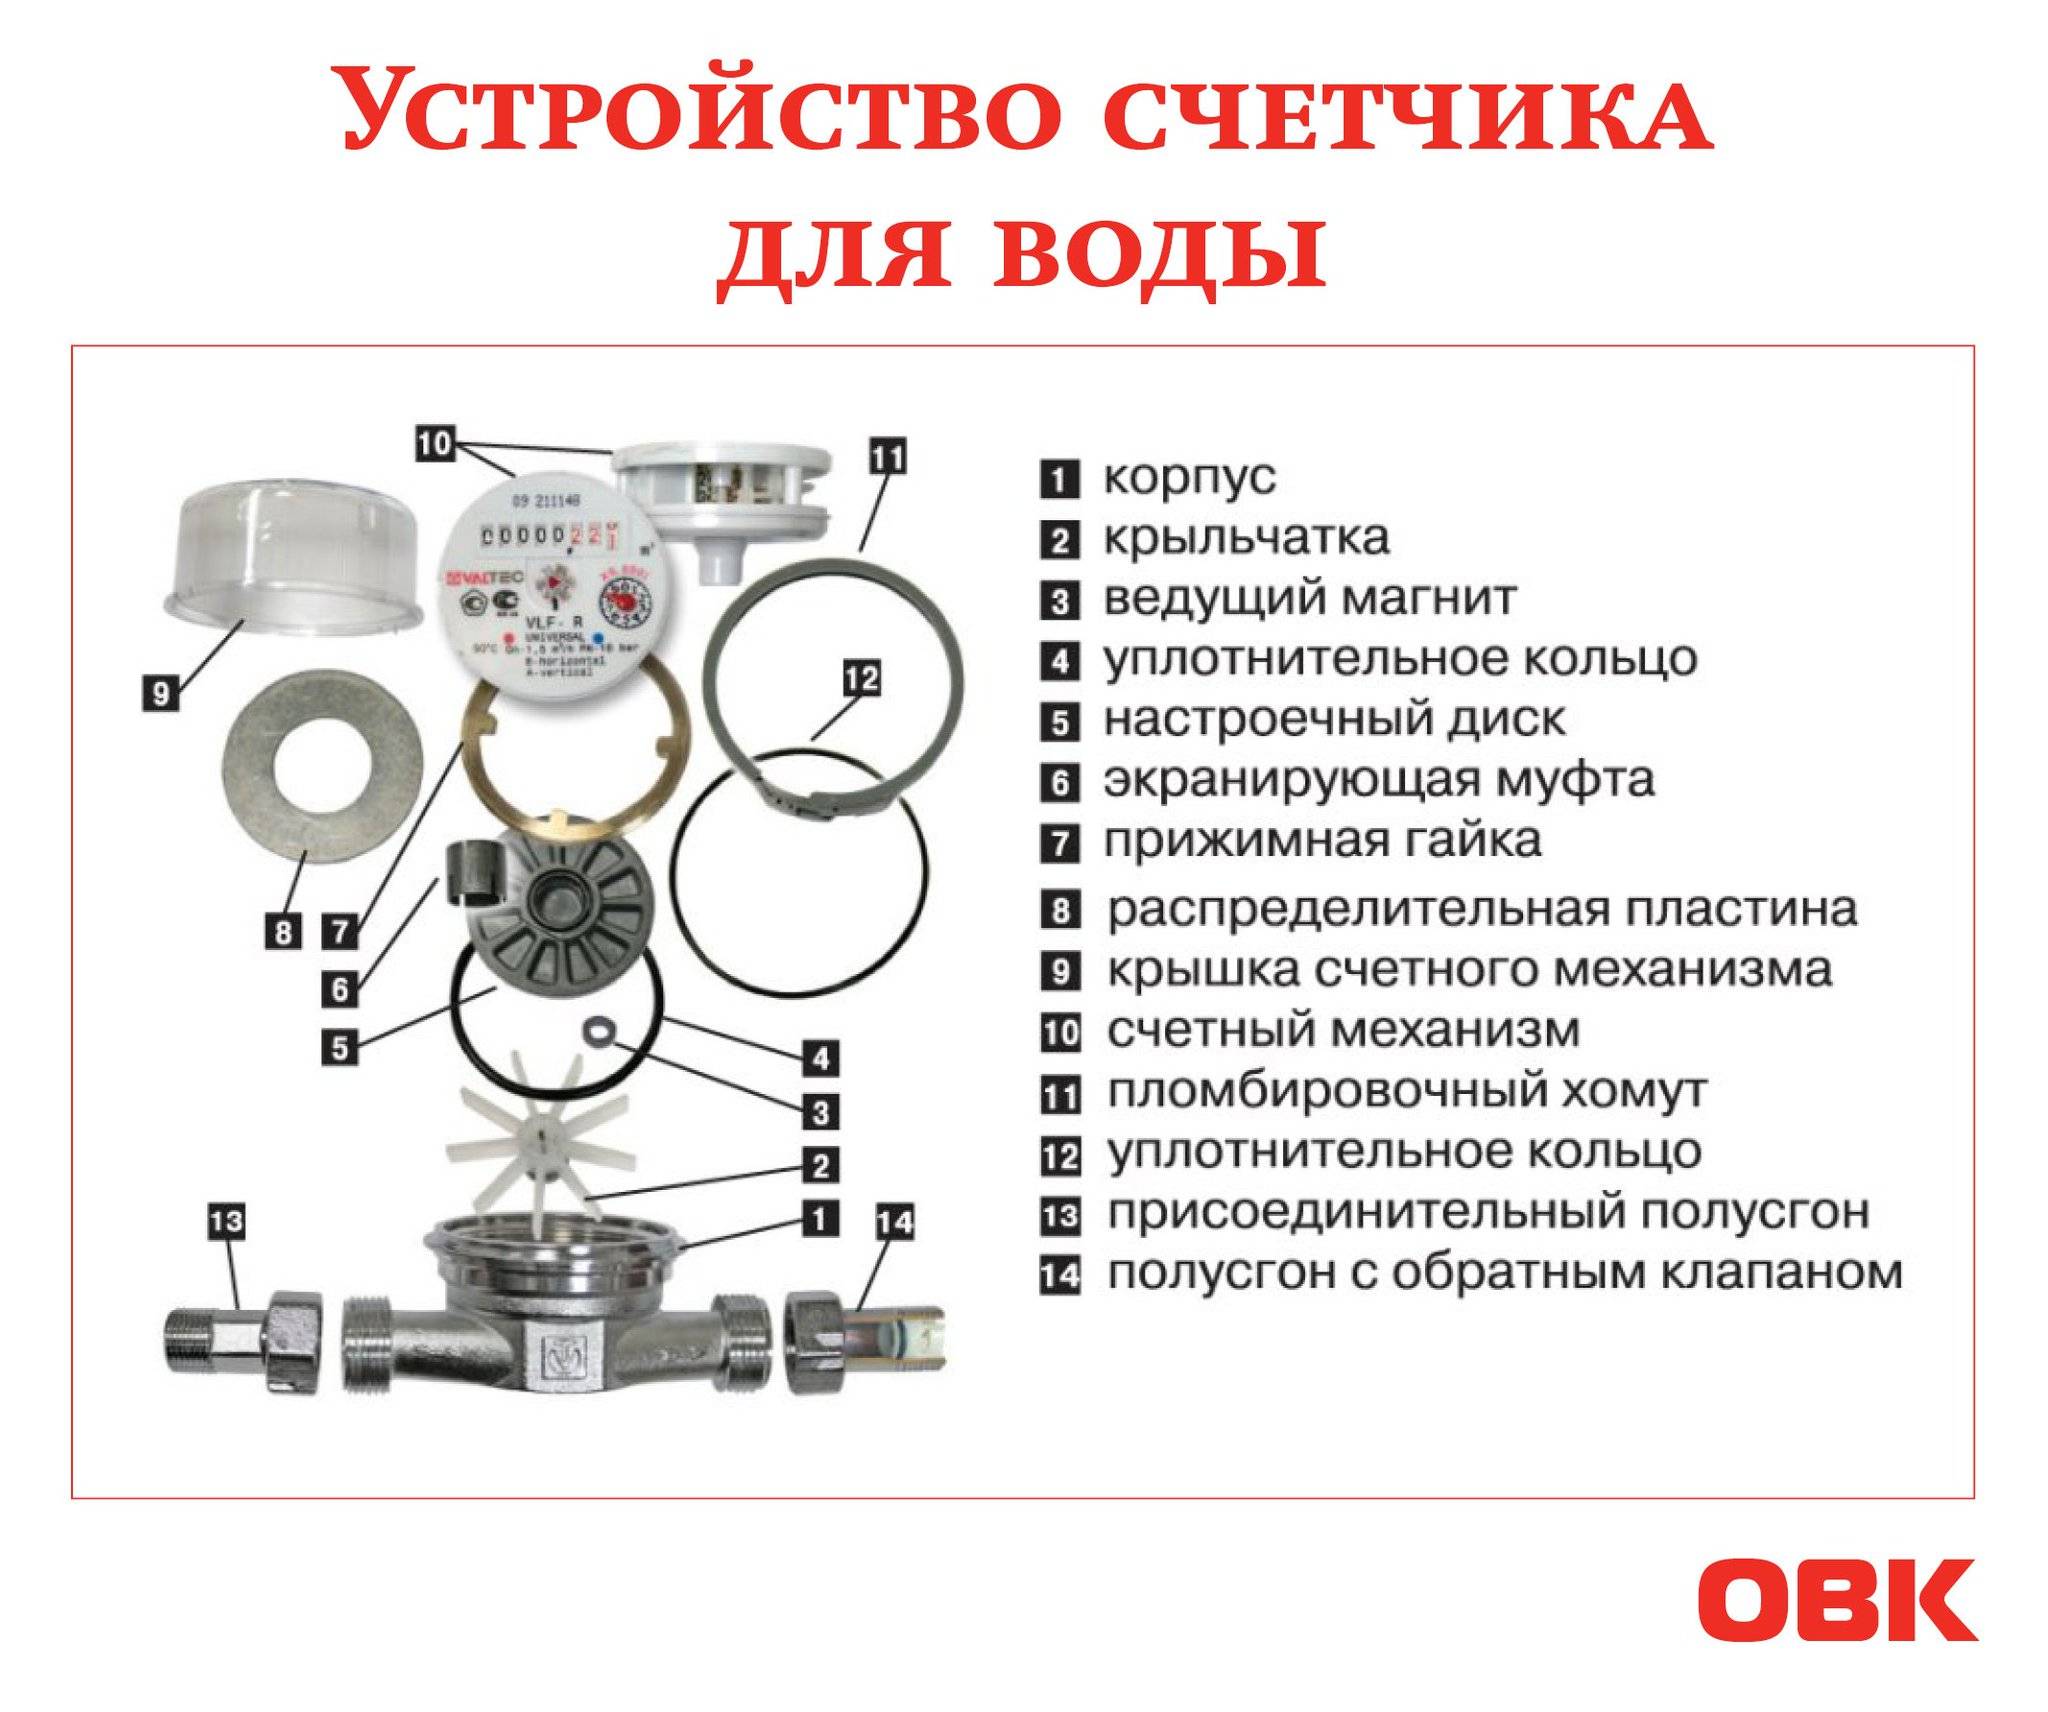 Электронный счетчик воды - что это такое, отличия от механического, плюсы и минусы, обзор популярных моделей, а также инструкция по установке | house-fitness.ru